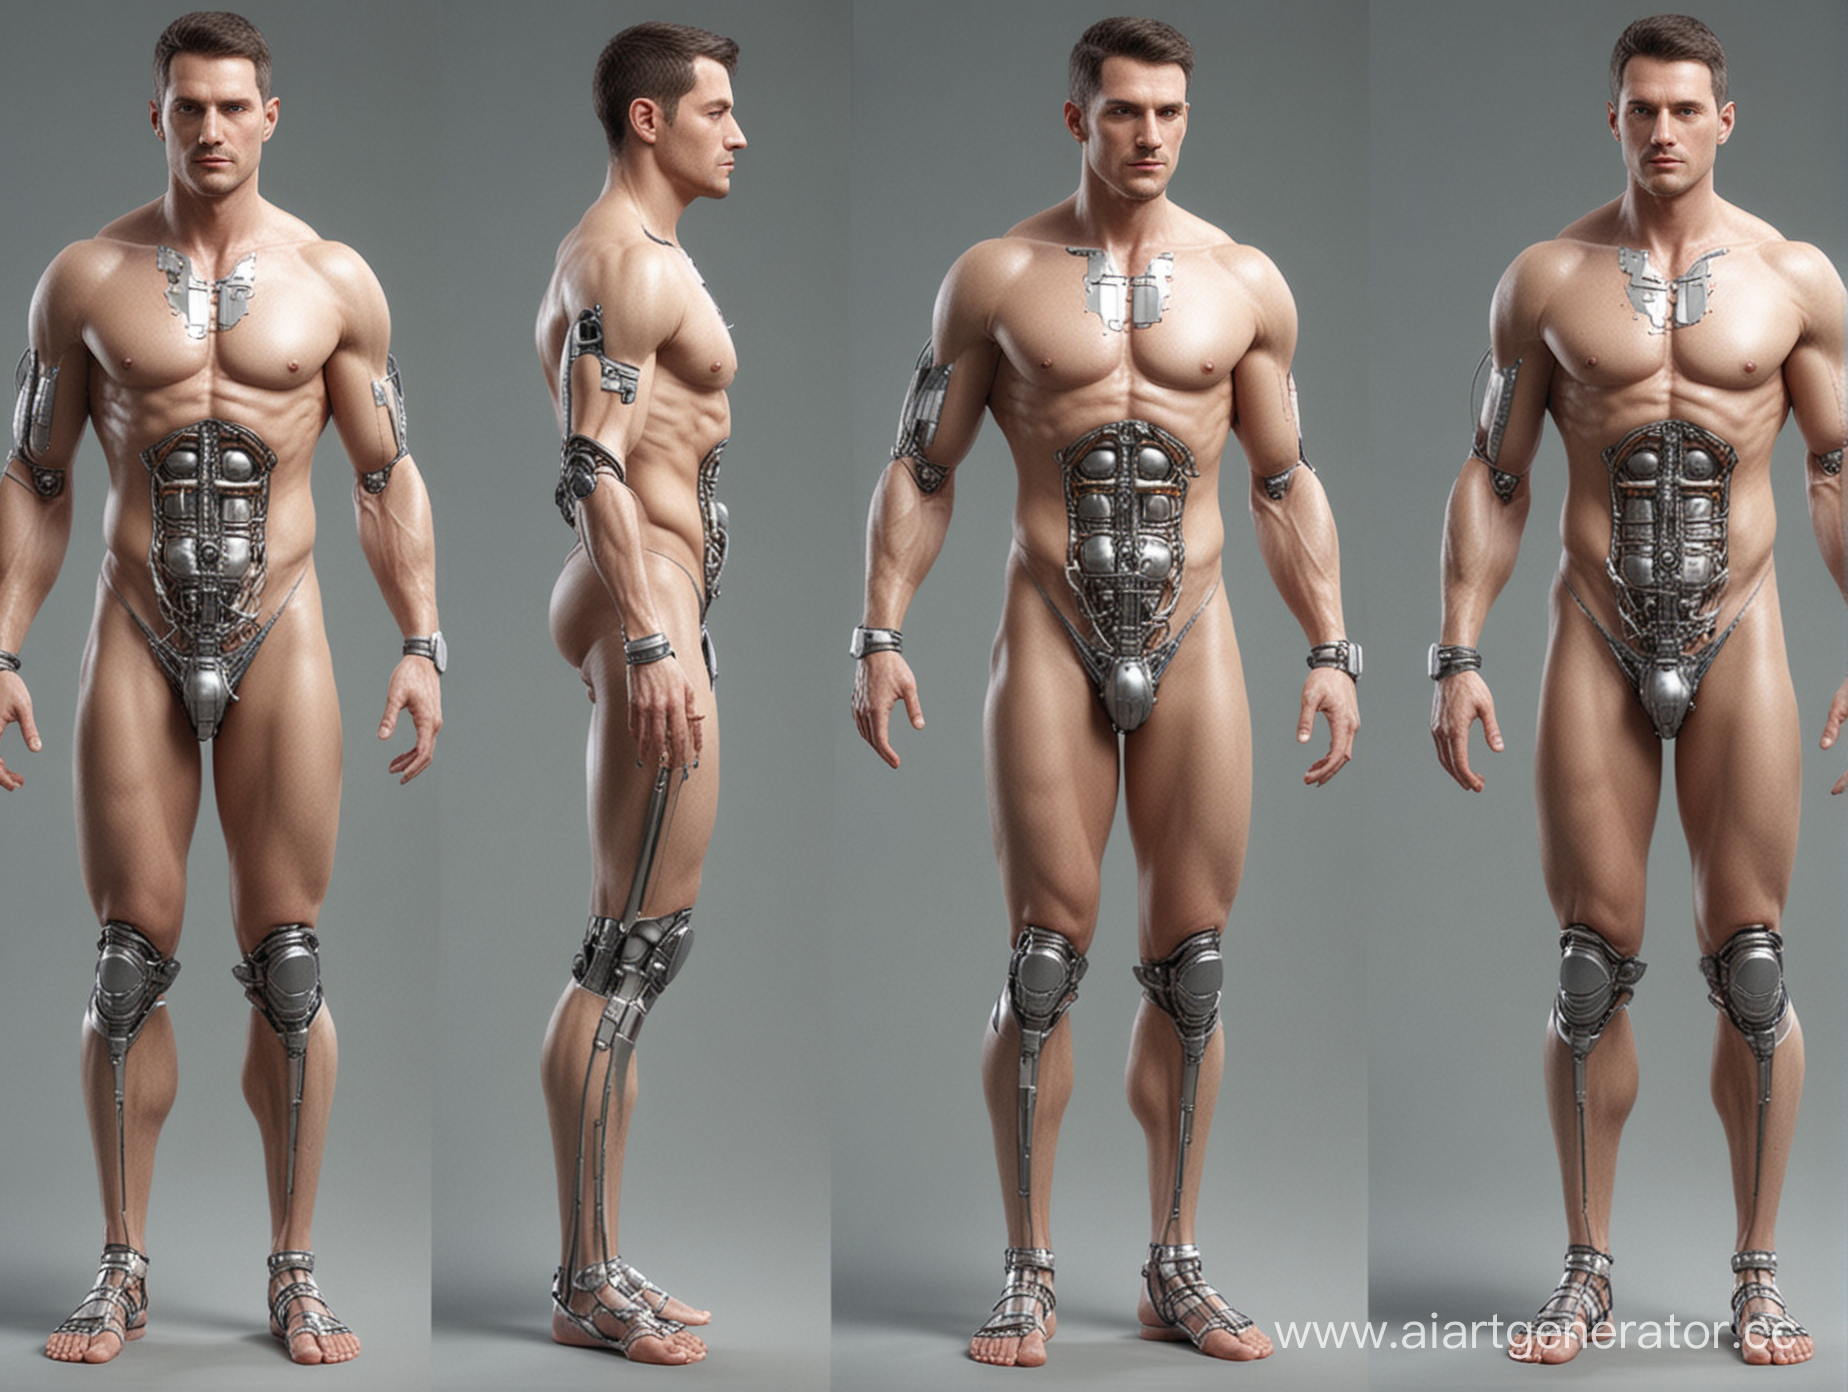 Изобразить модель человека будущего с имплантами на теле в полный рост мужчину. Это должно выглядеть в техническом стиле
